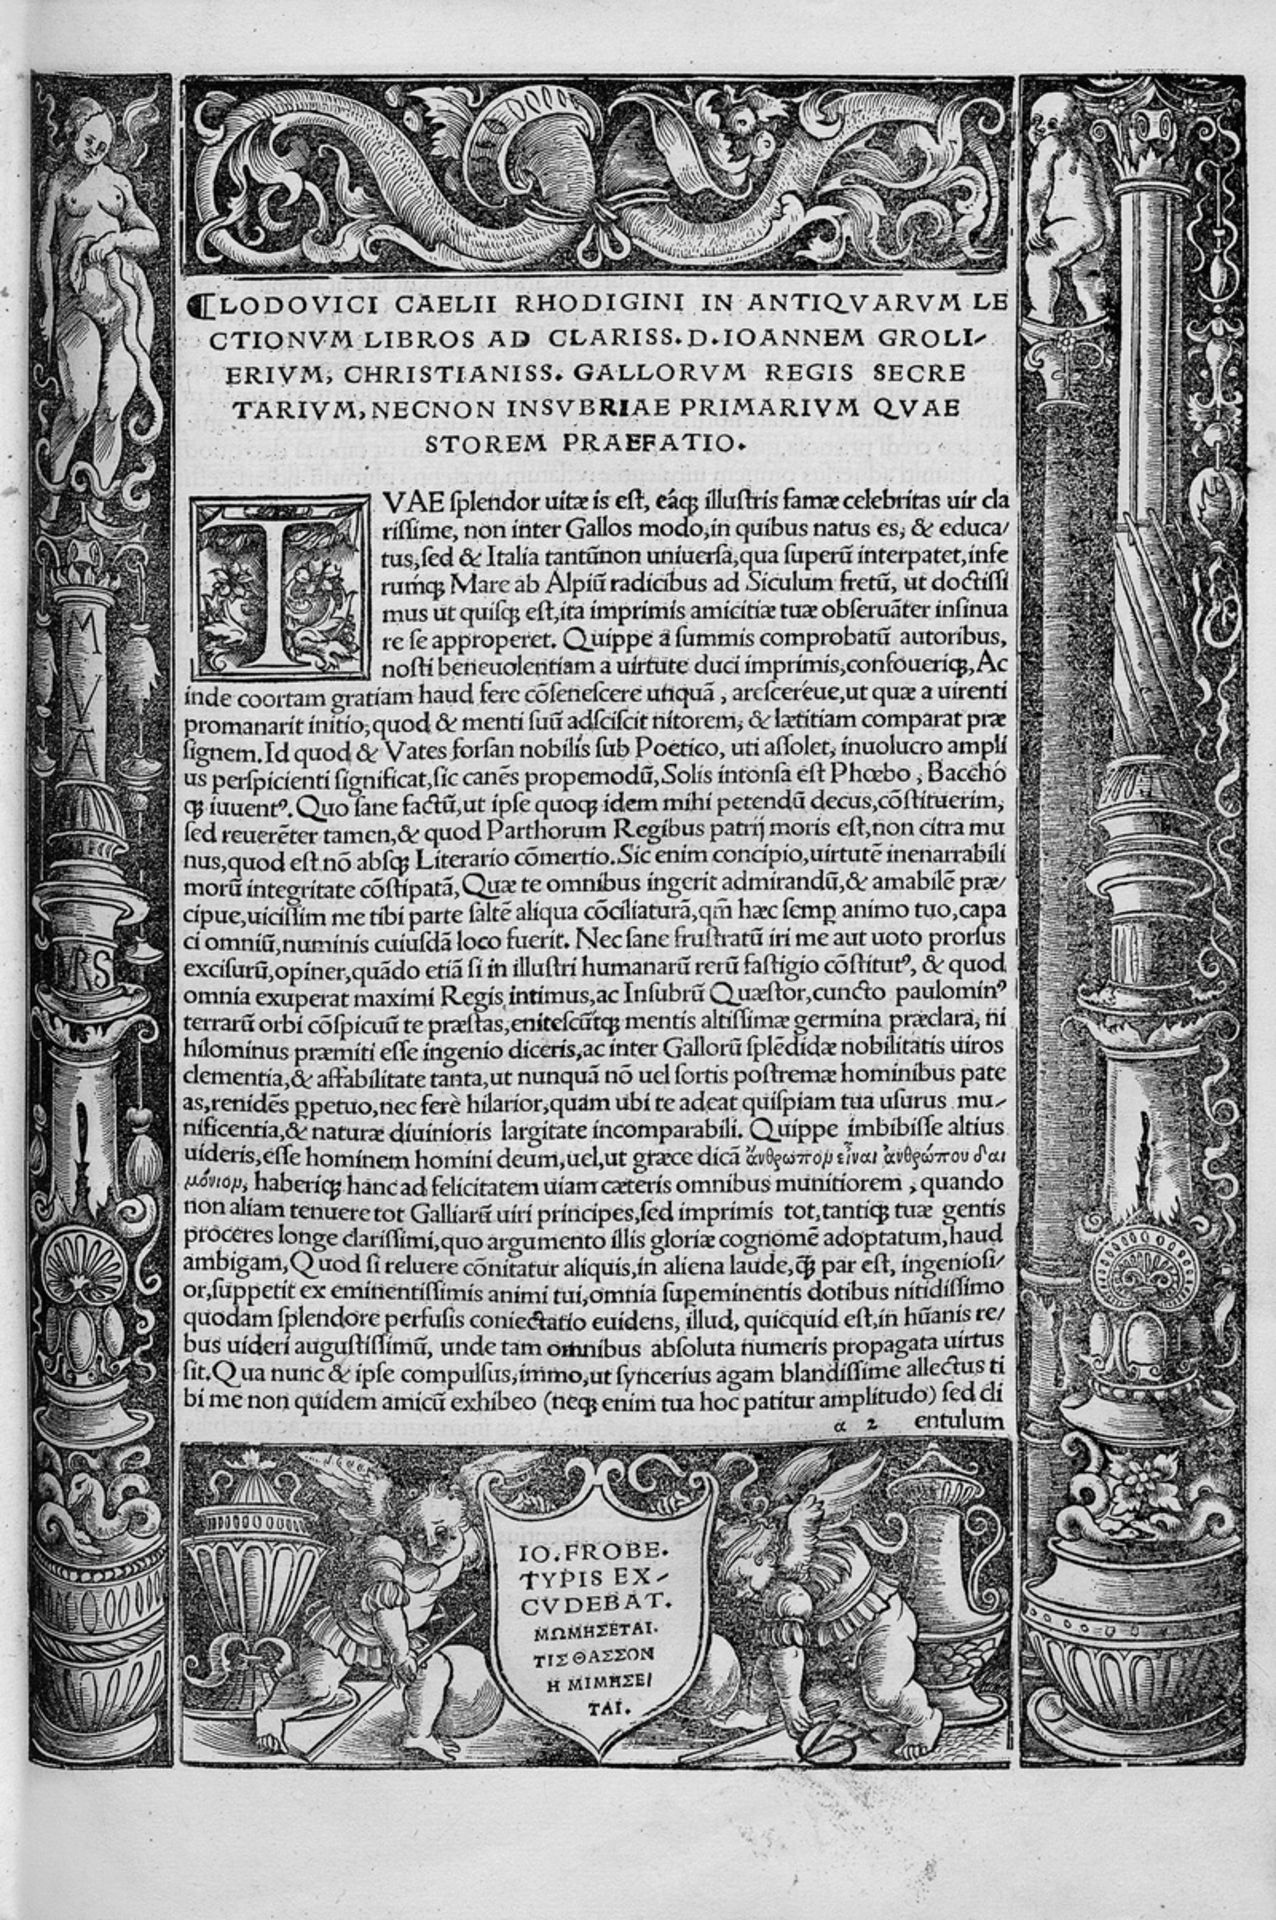 Rhodiginus, Lodovico: Lectionum antiquarum Libri XVI